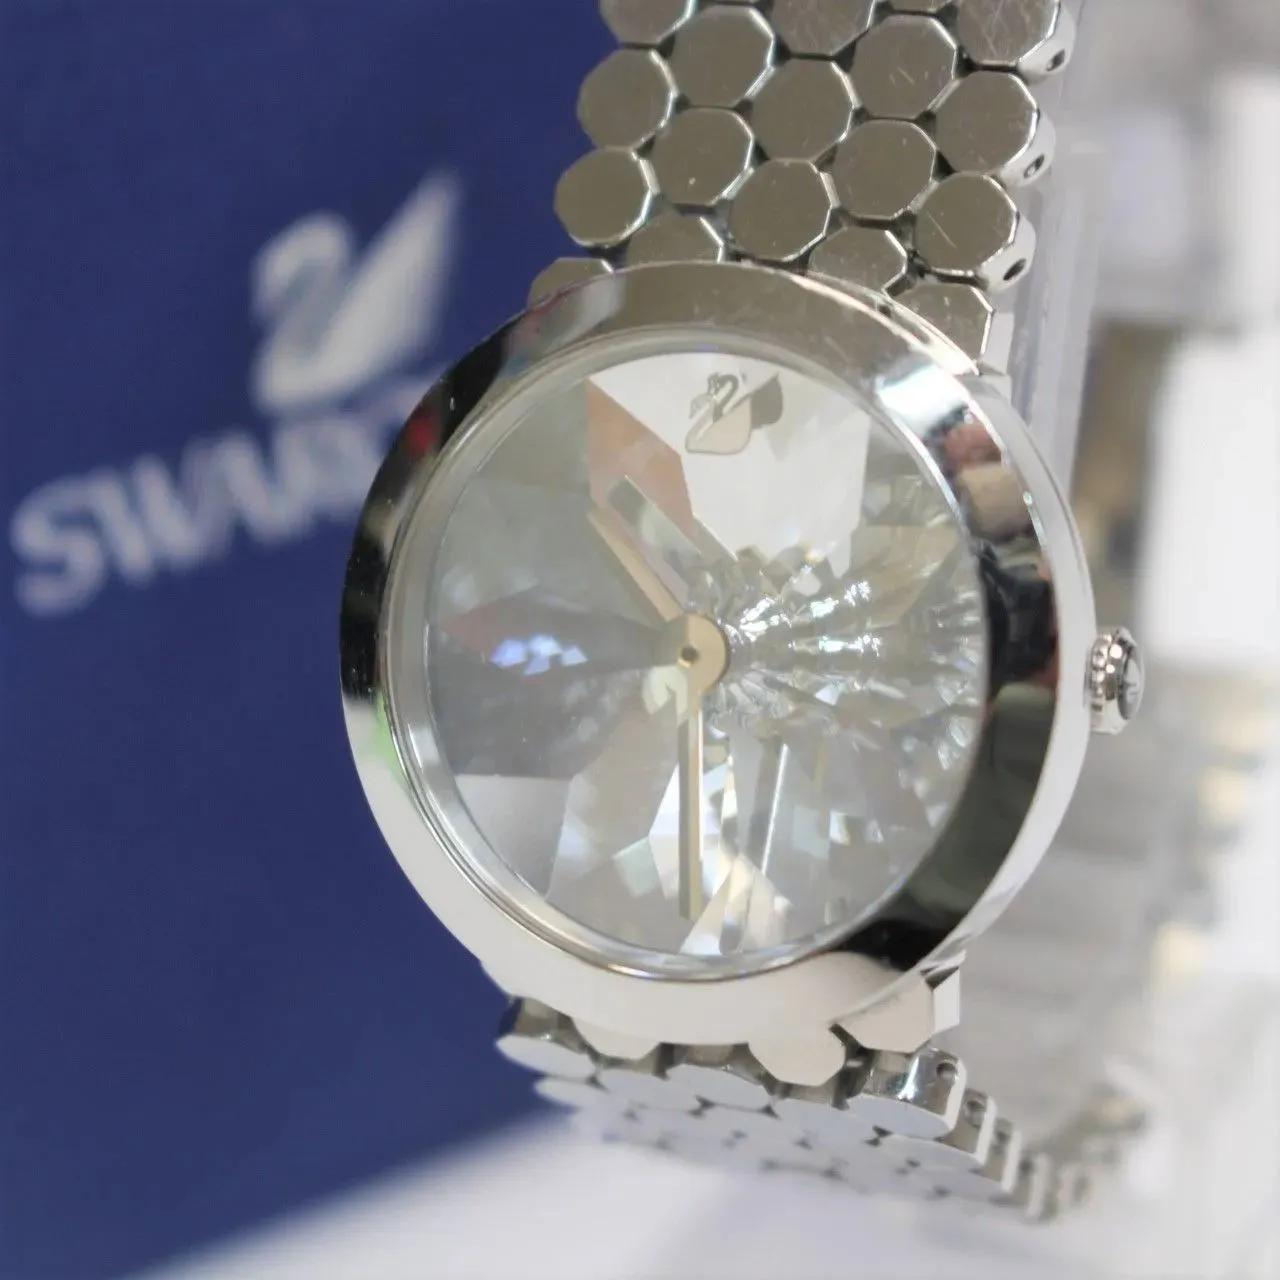 東京都新宿区にて スワロフスキー 腕時計 吉岡徳仁デザイン LAKE OF SHIMMER  を出張買取させて頂きました。